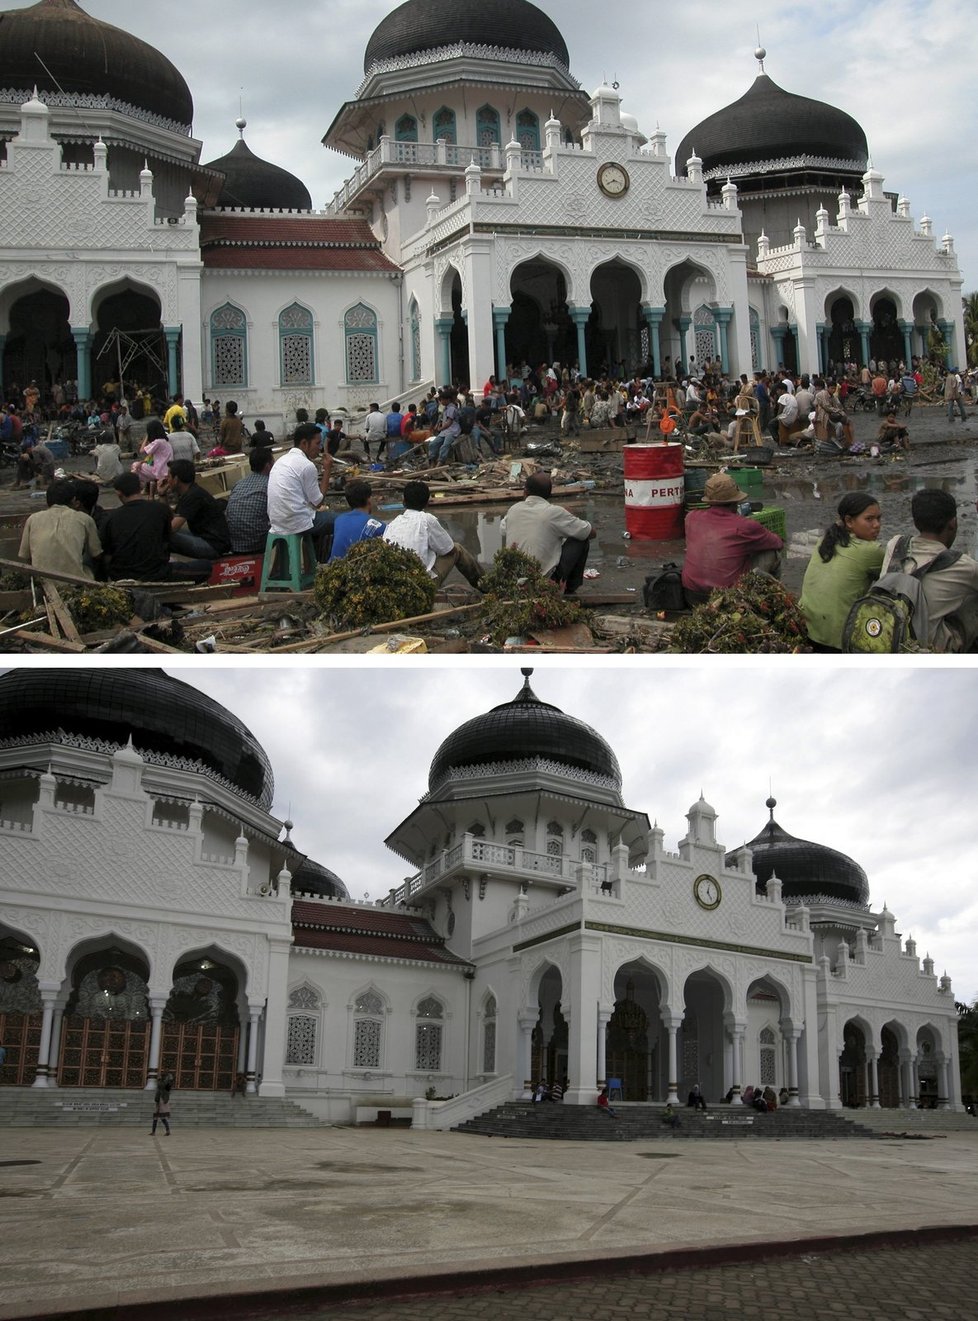 Deset let od přírodní katastrofy. Jak vypadají místa, která zasáhla tsunami v roce 2004, nyní?